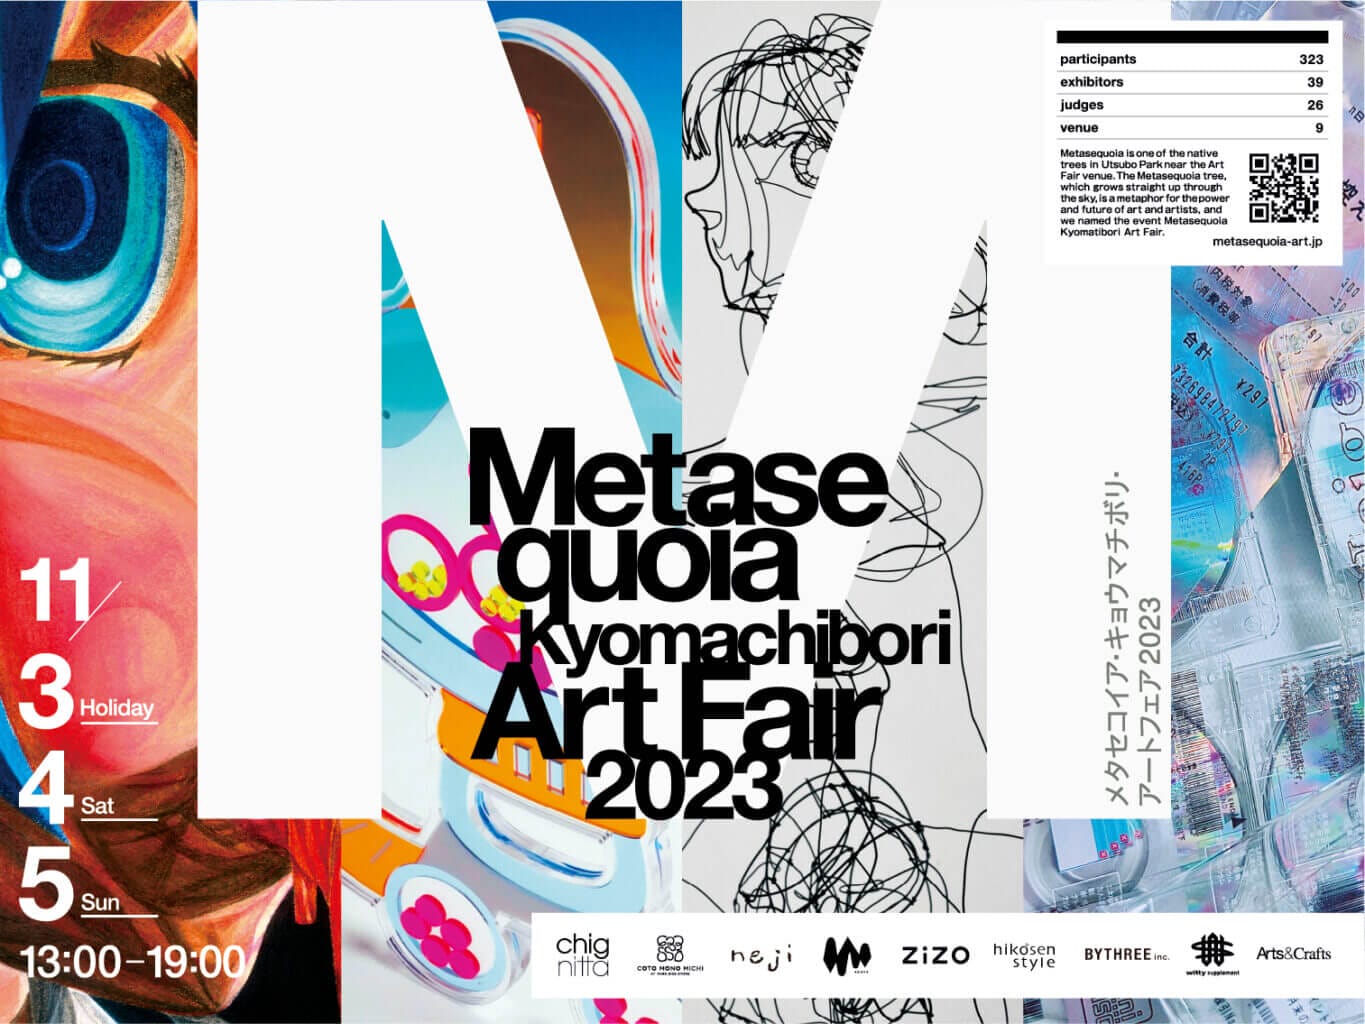 「メタセコイア・キョウマチボリ・アートフェア」、京町堀の9会場にて開催。公募で選出された39組のアーティストが出展。